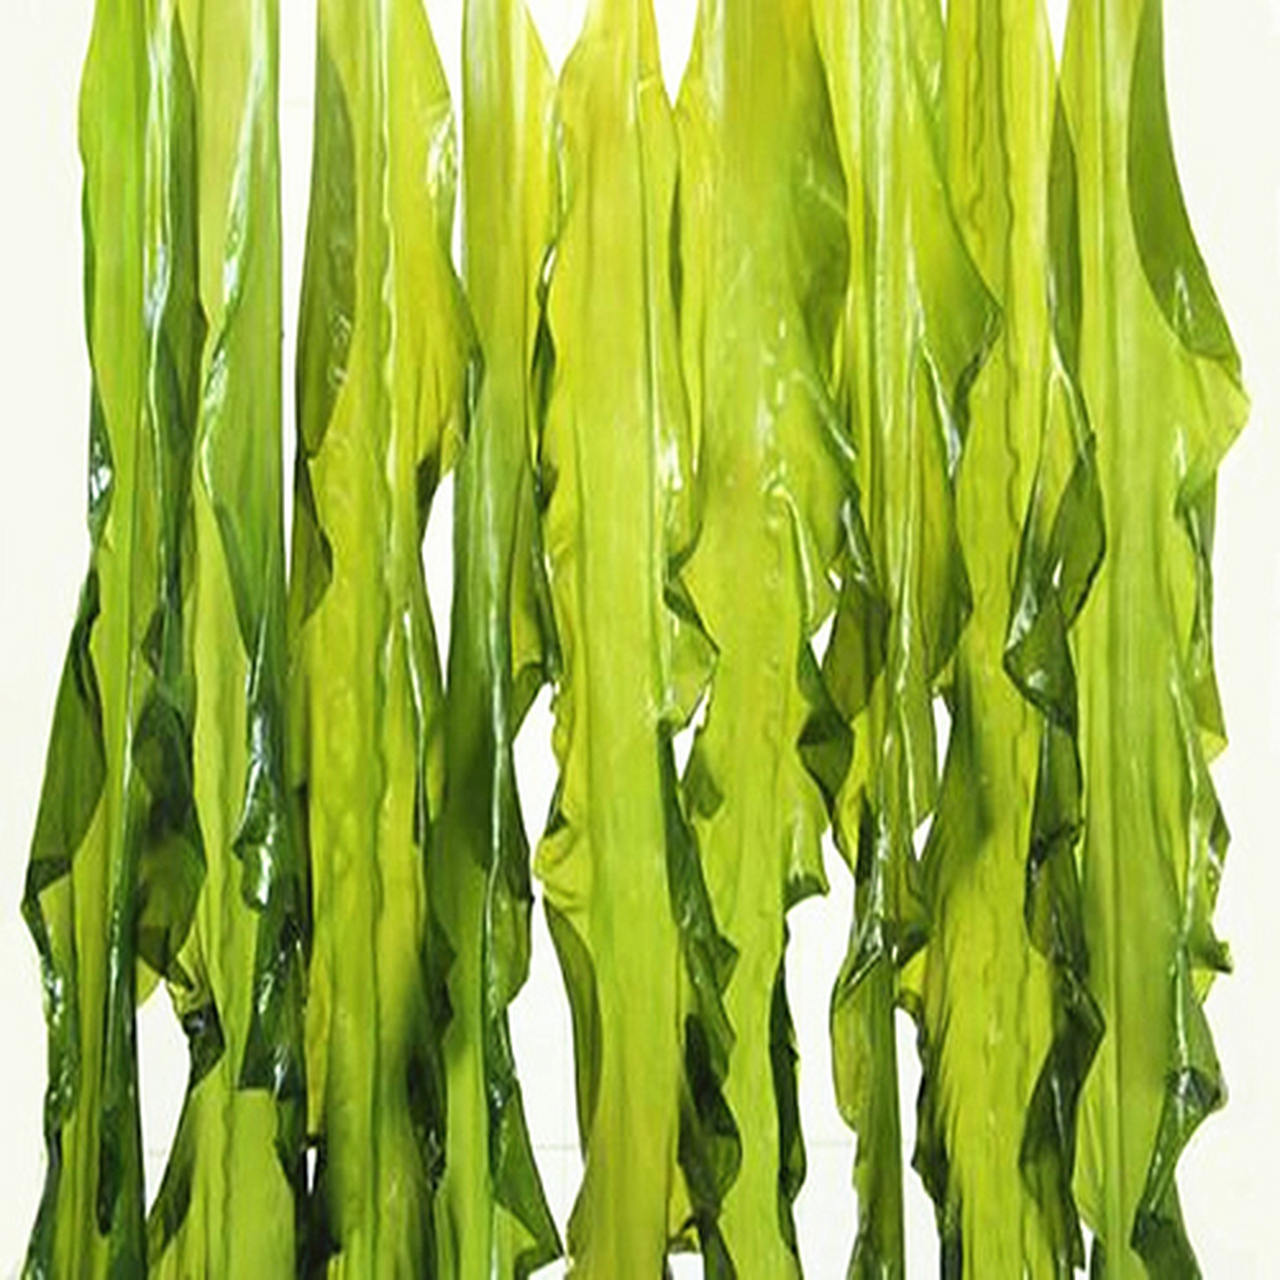 海带种类与作用  海带(laminaria japonica)是多年生大型食用藻类